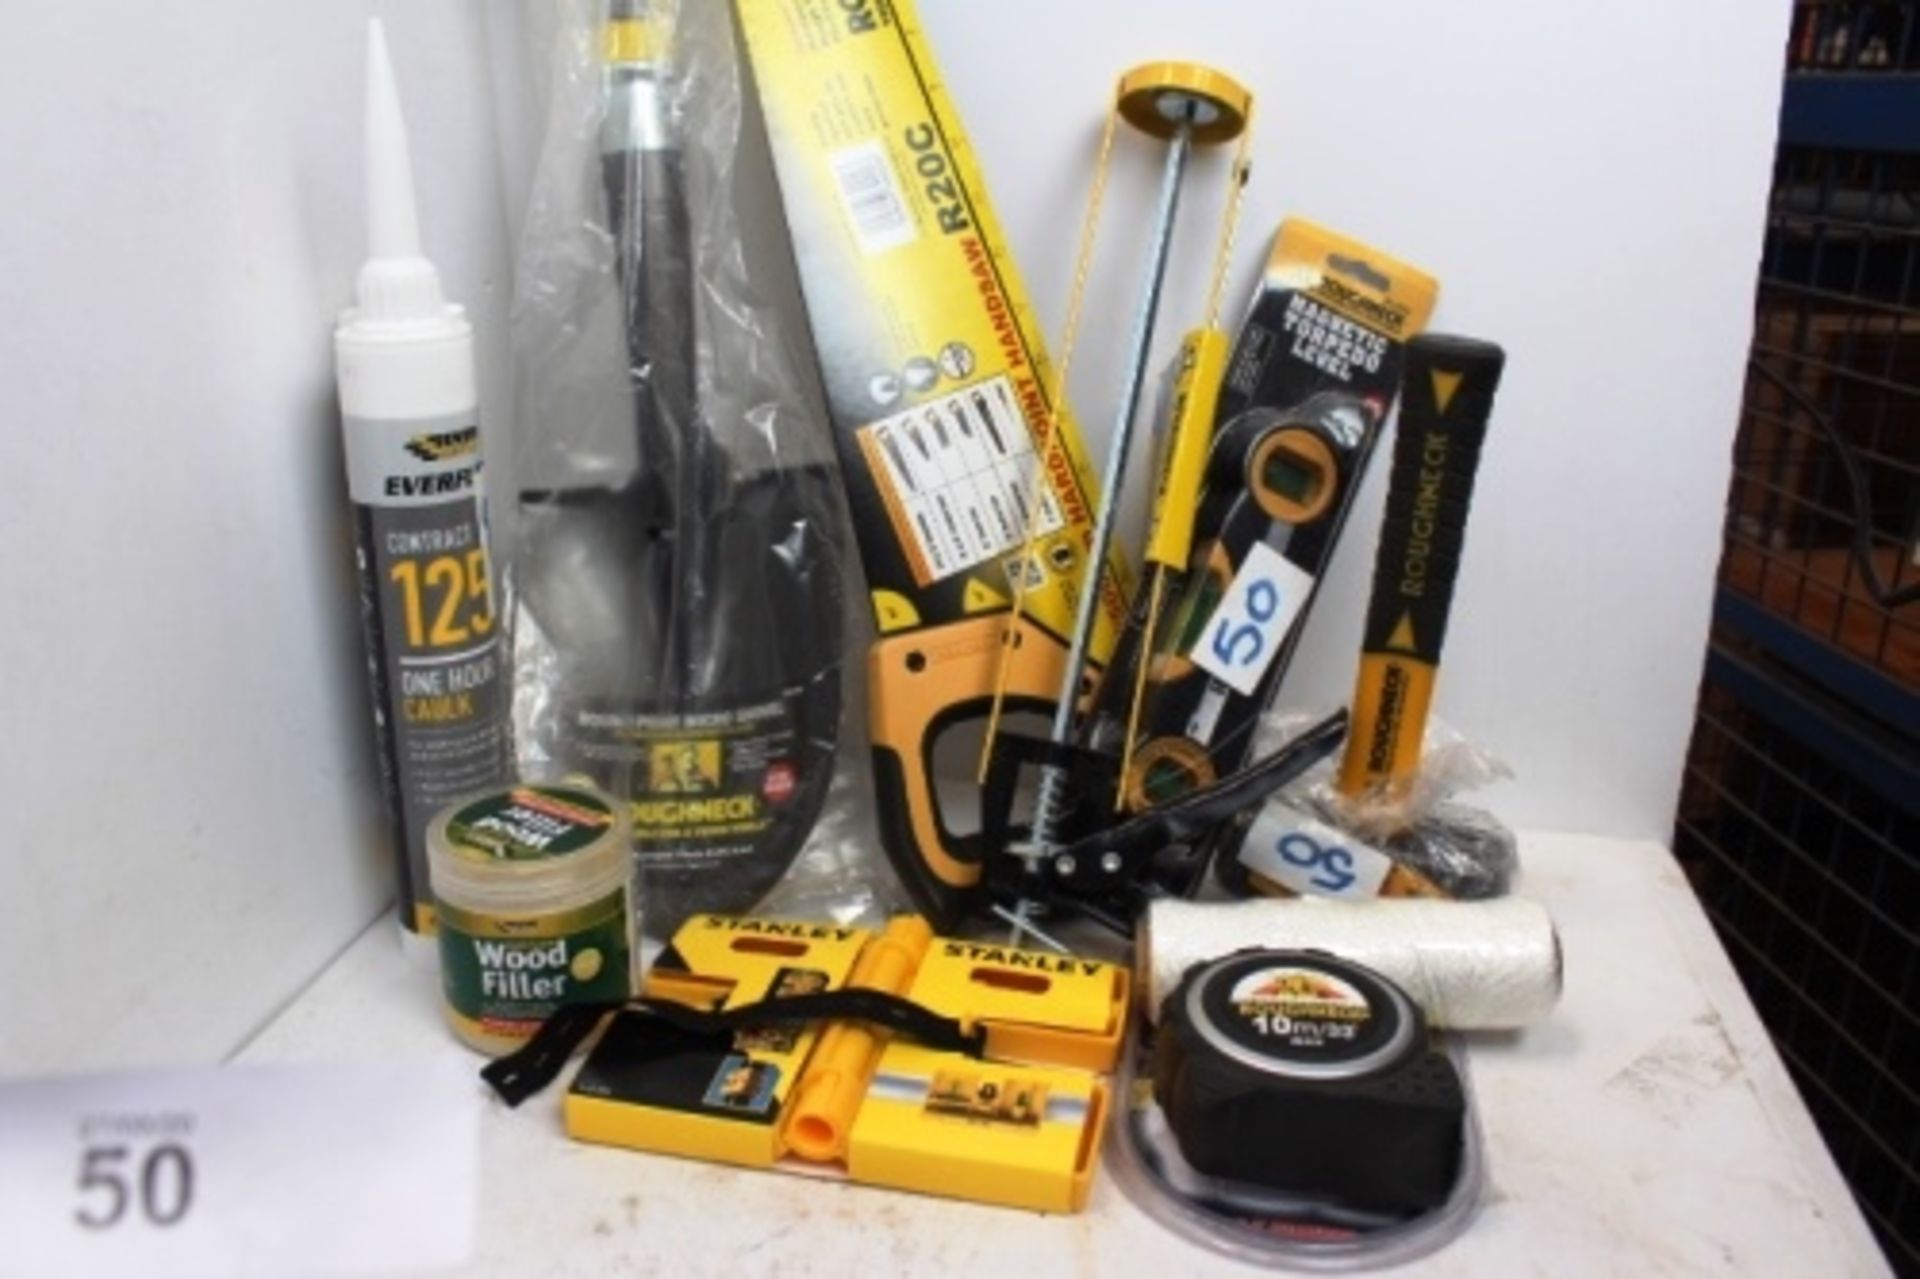 An assortment of tools including Roughneck 1.8kg sledgehammer, handsaw, caulking gun, spirit